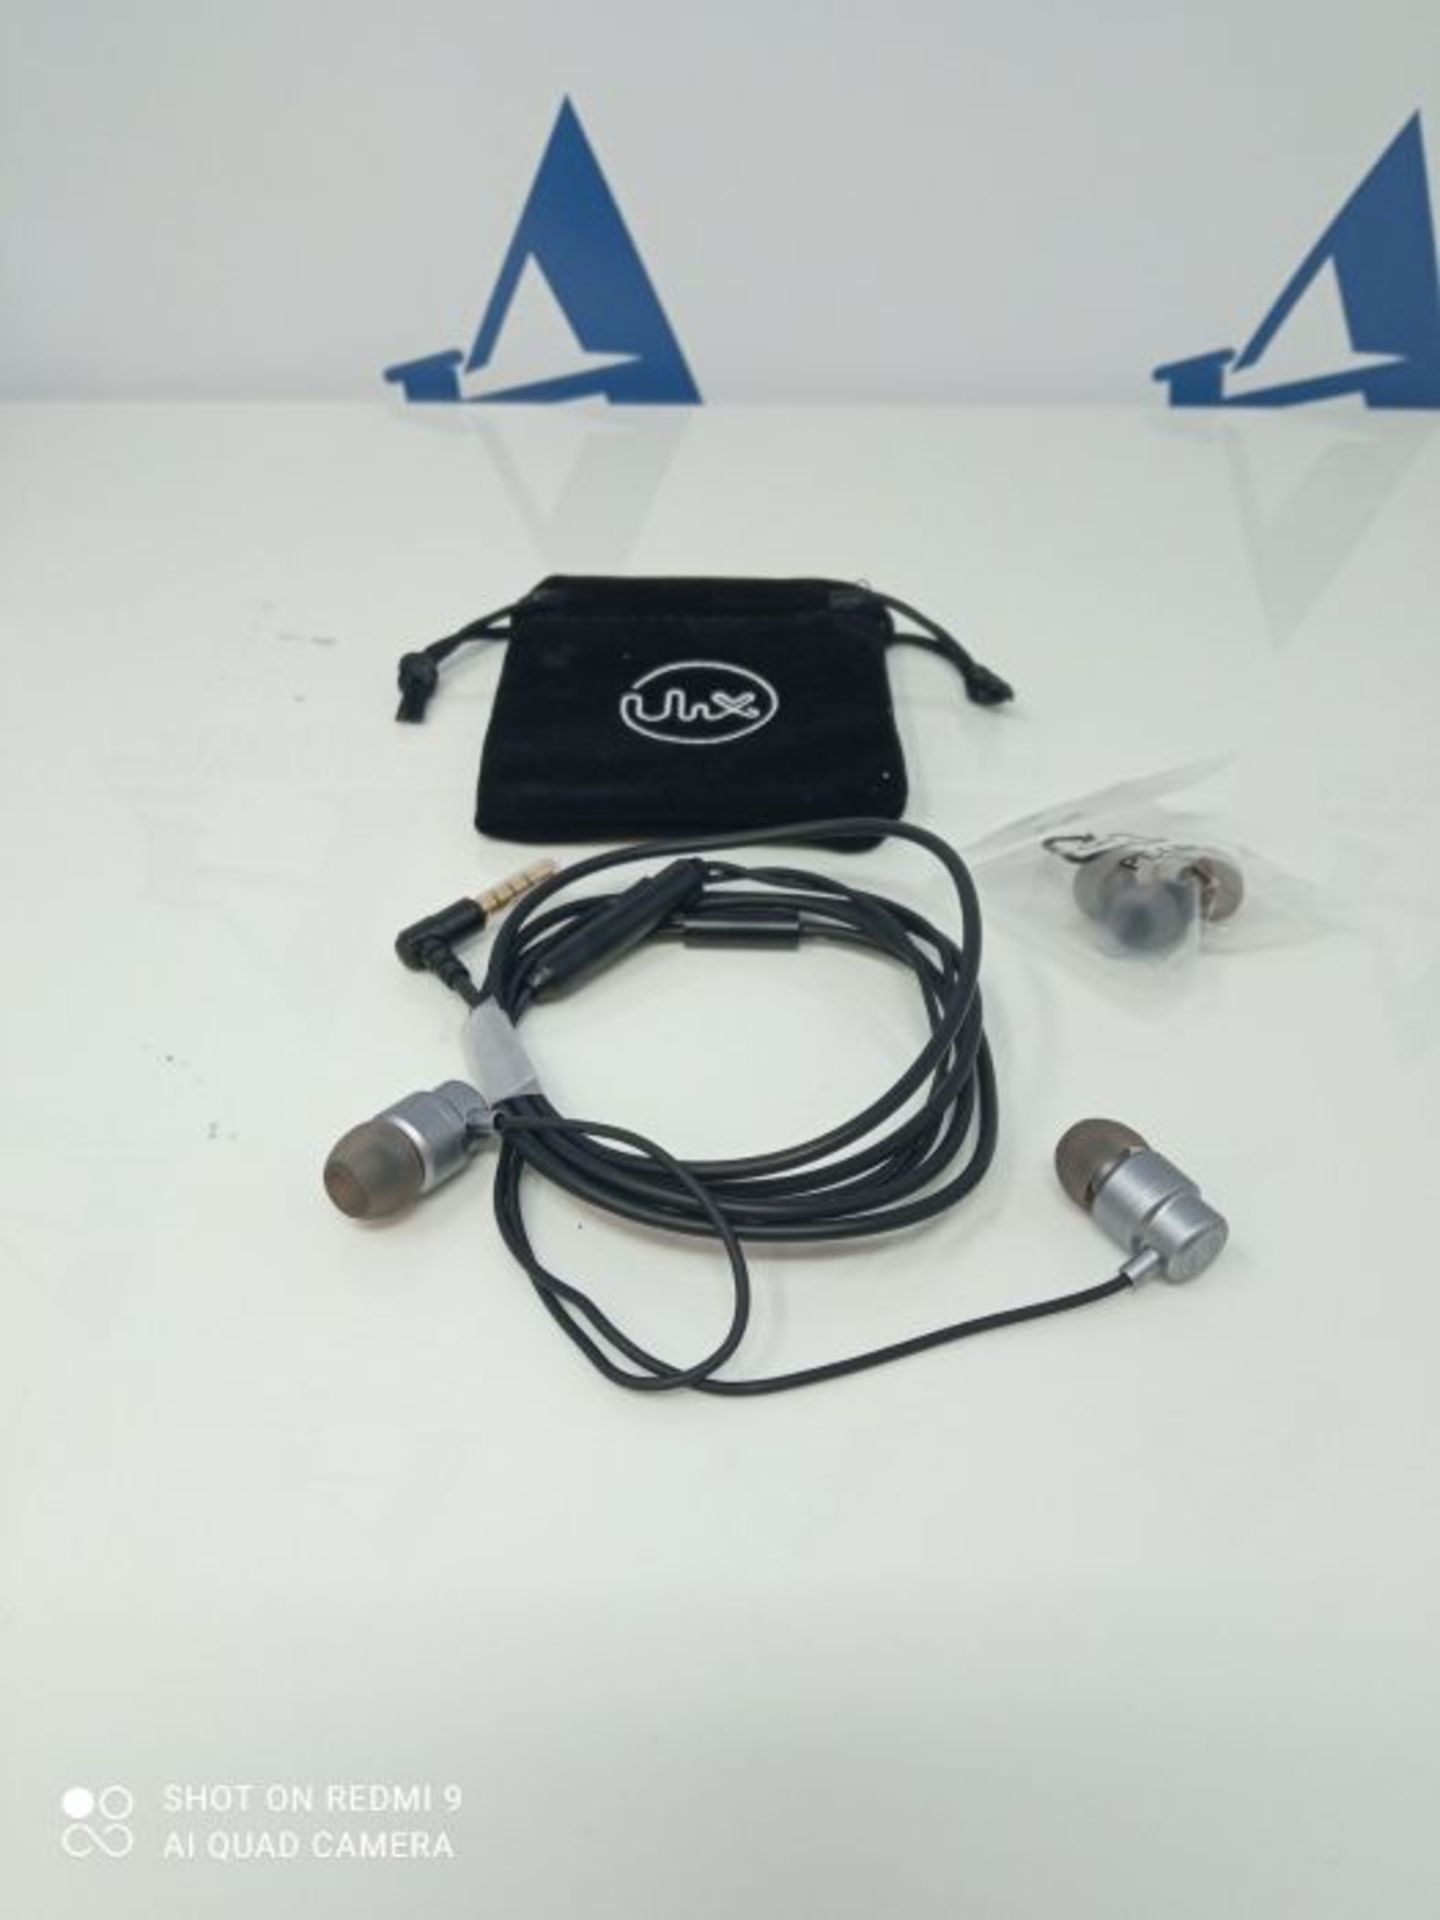 ULIX Rider Kopfhörer In Ear Ohrhörer mit Kabel und Mikrofon, 3 Jahre Garantie, 48© - Image 3 of 3